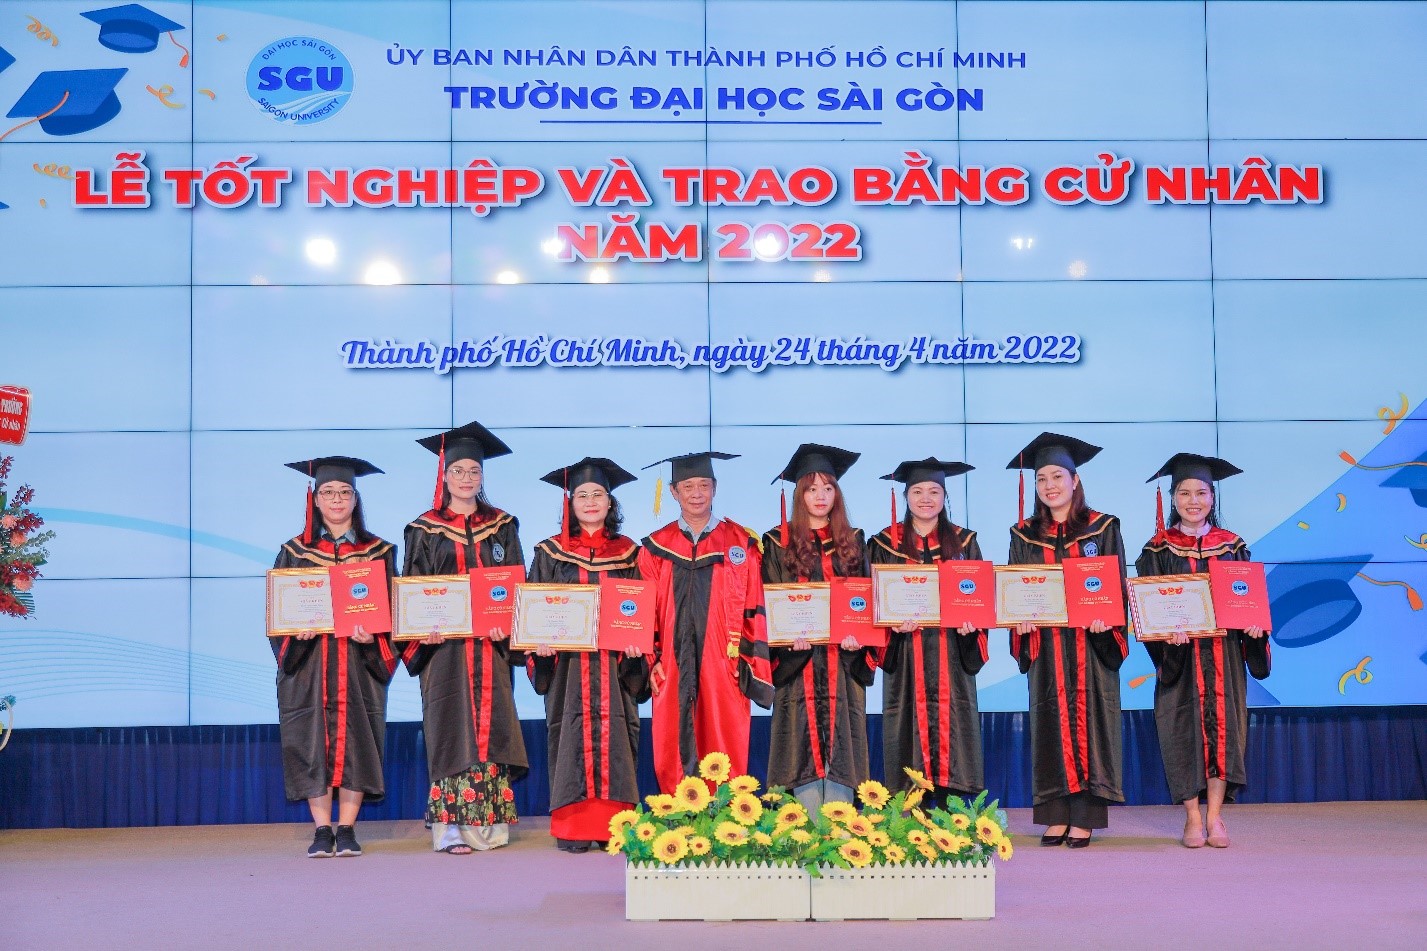 Trường Đại học Sài Gòn tổ chức Lễ tốt nghiệp và trao bằng kỹ sư ...